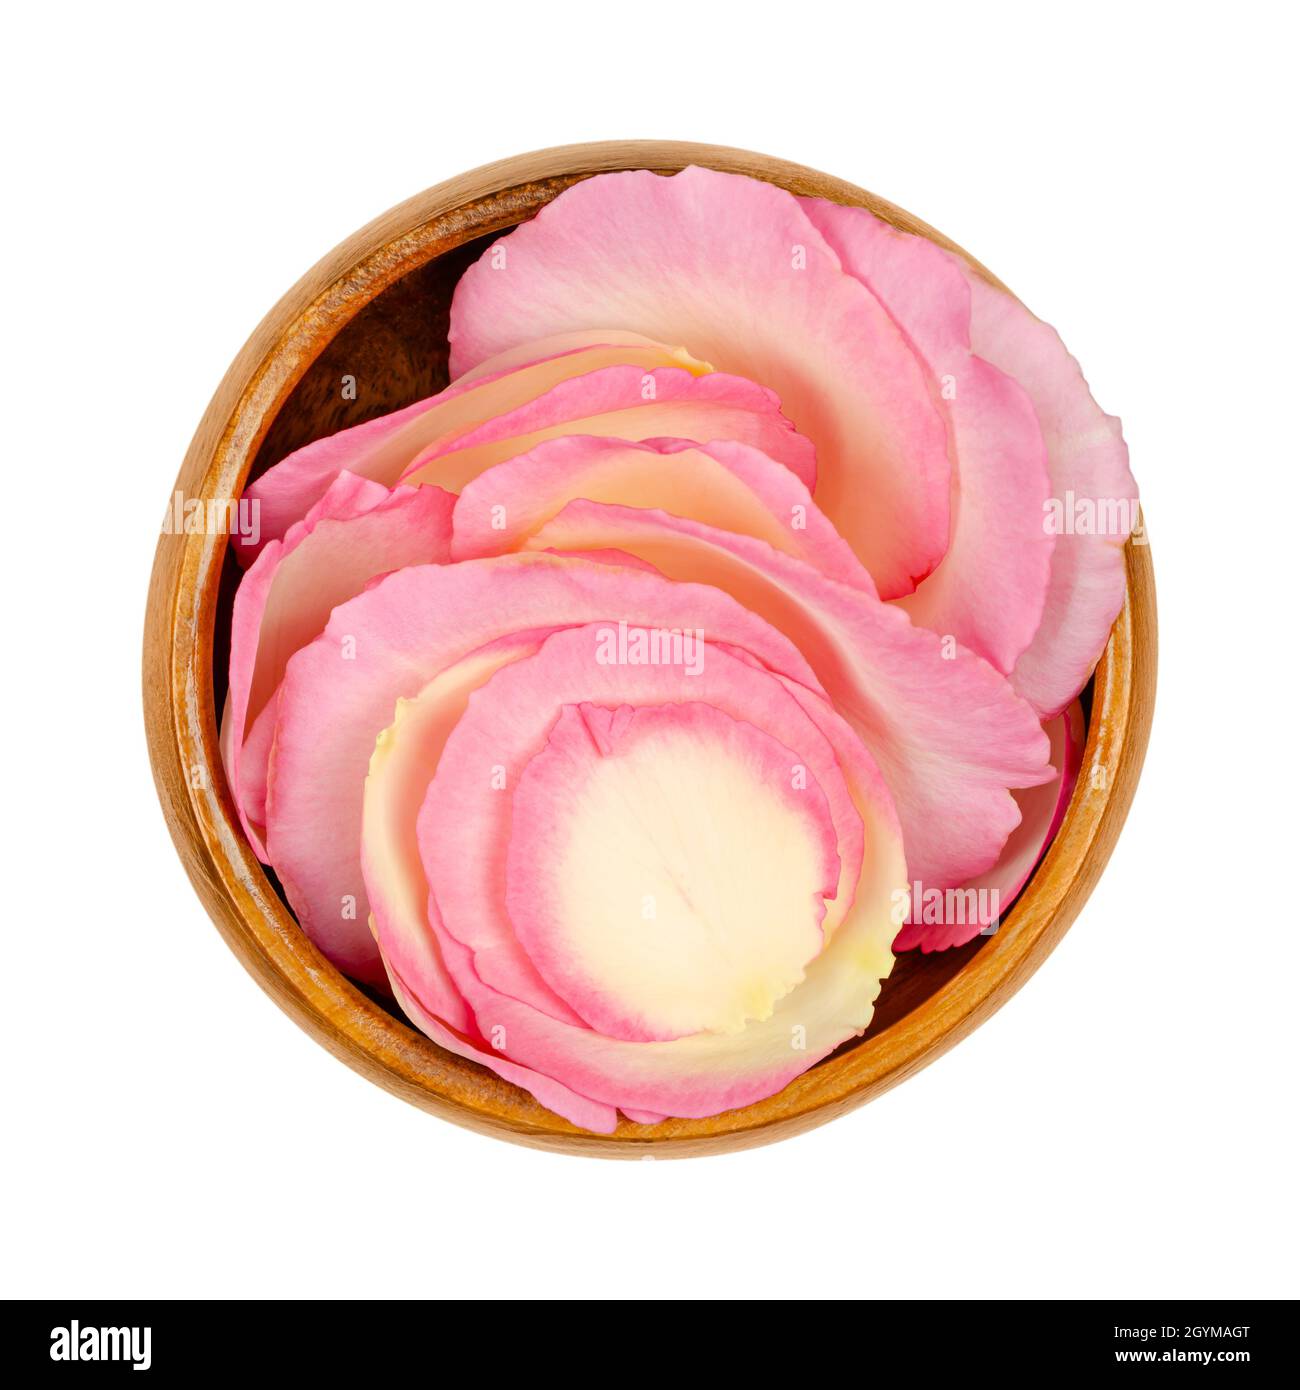 Pétalos de rosa en un tazón de madera. Pétalos recién escogidos de una rosa de color rosa claro del jardín, llamados China, chino o rosa de Bengala. Rosa chinensis. Foto de stock